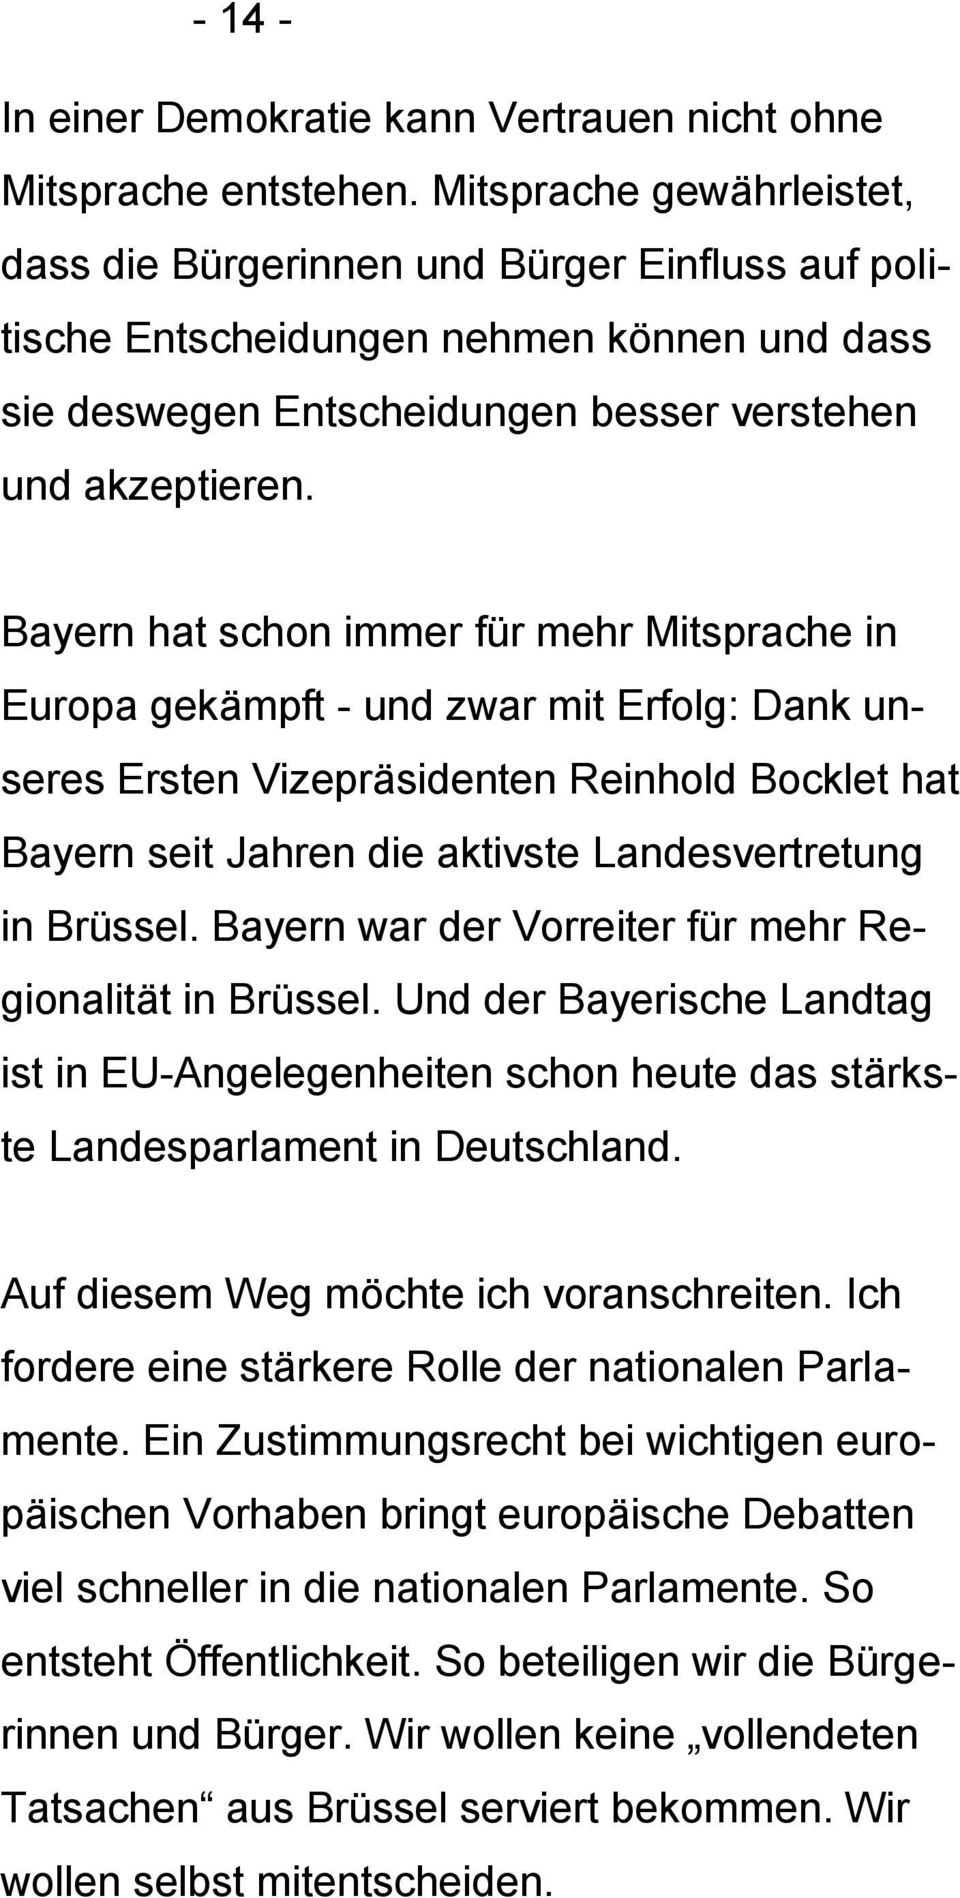 Bayern hat schon immer für mehr Mitsprache in Europa gekämpft - und zwar mit Erfolg: Dank unseres Ersten Vizepräsidenten Reinhold Bocklet hat Bayern seit Jahren die aktivste Landesvertretung in